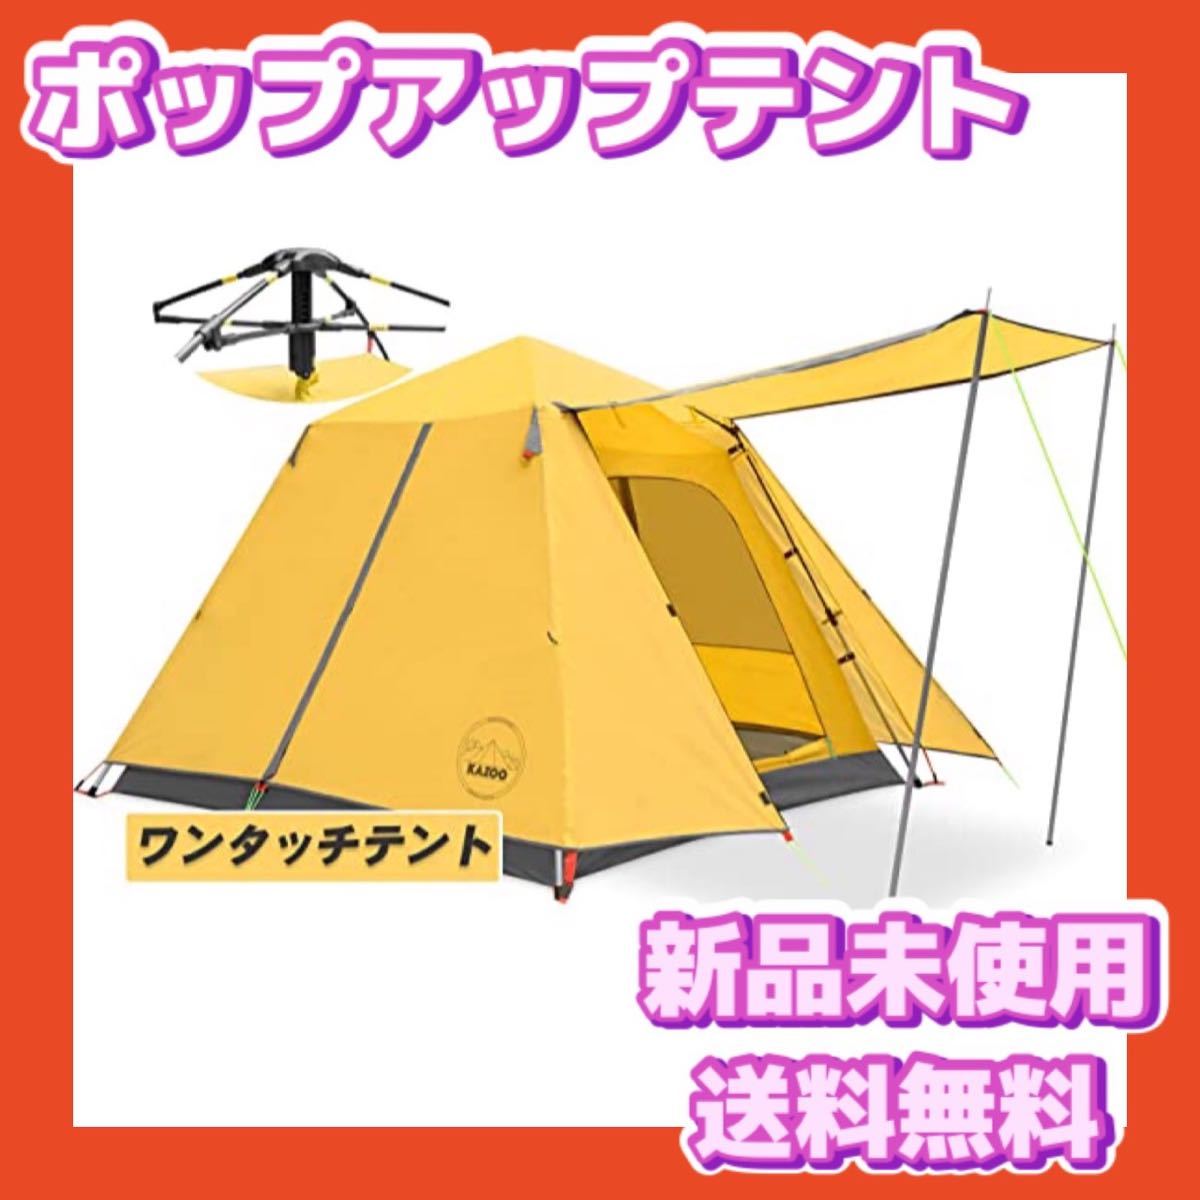 インポート正規品 KAZOOキャンプ用自動屋外ポップアップテント 4人用 テント/タープ